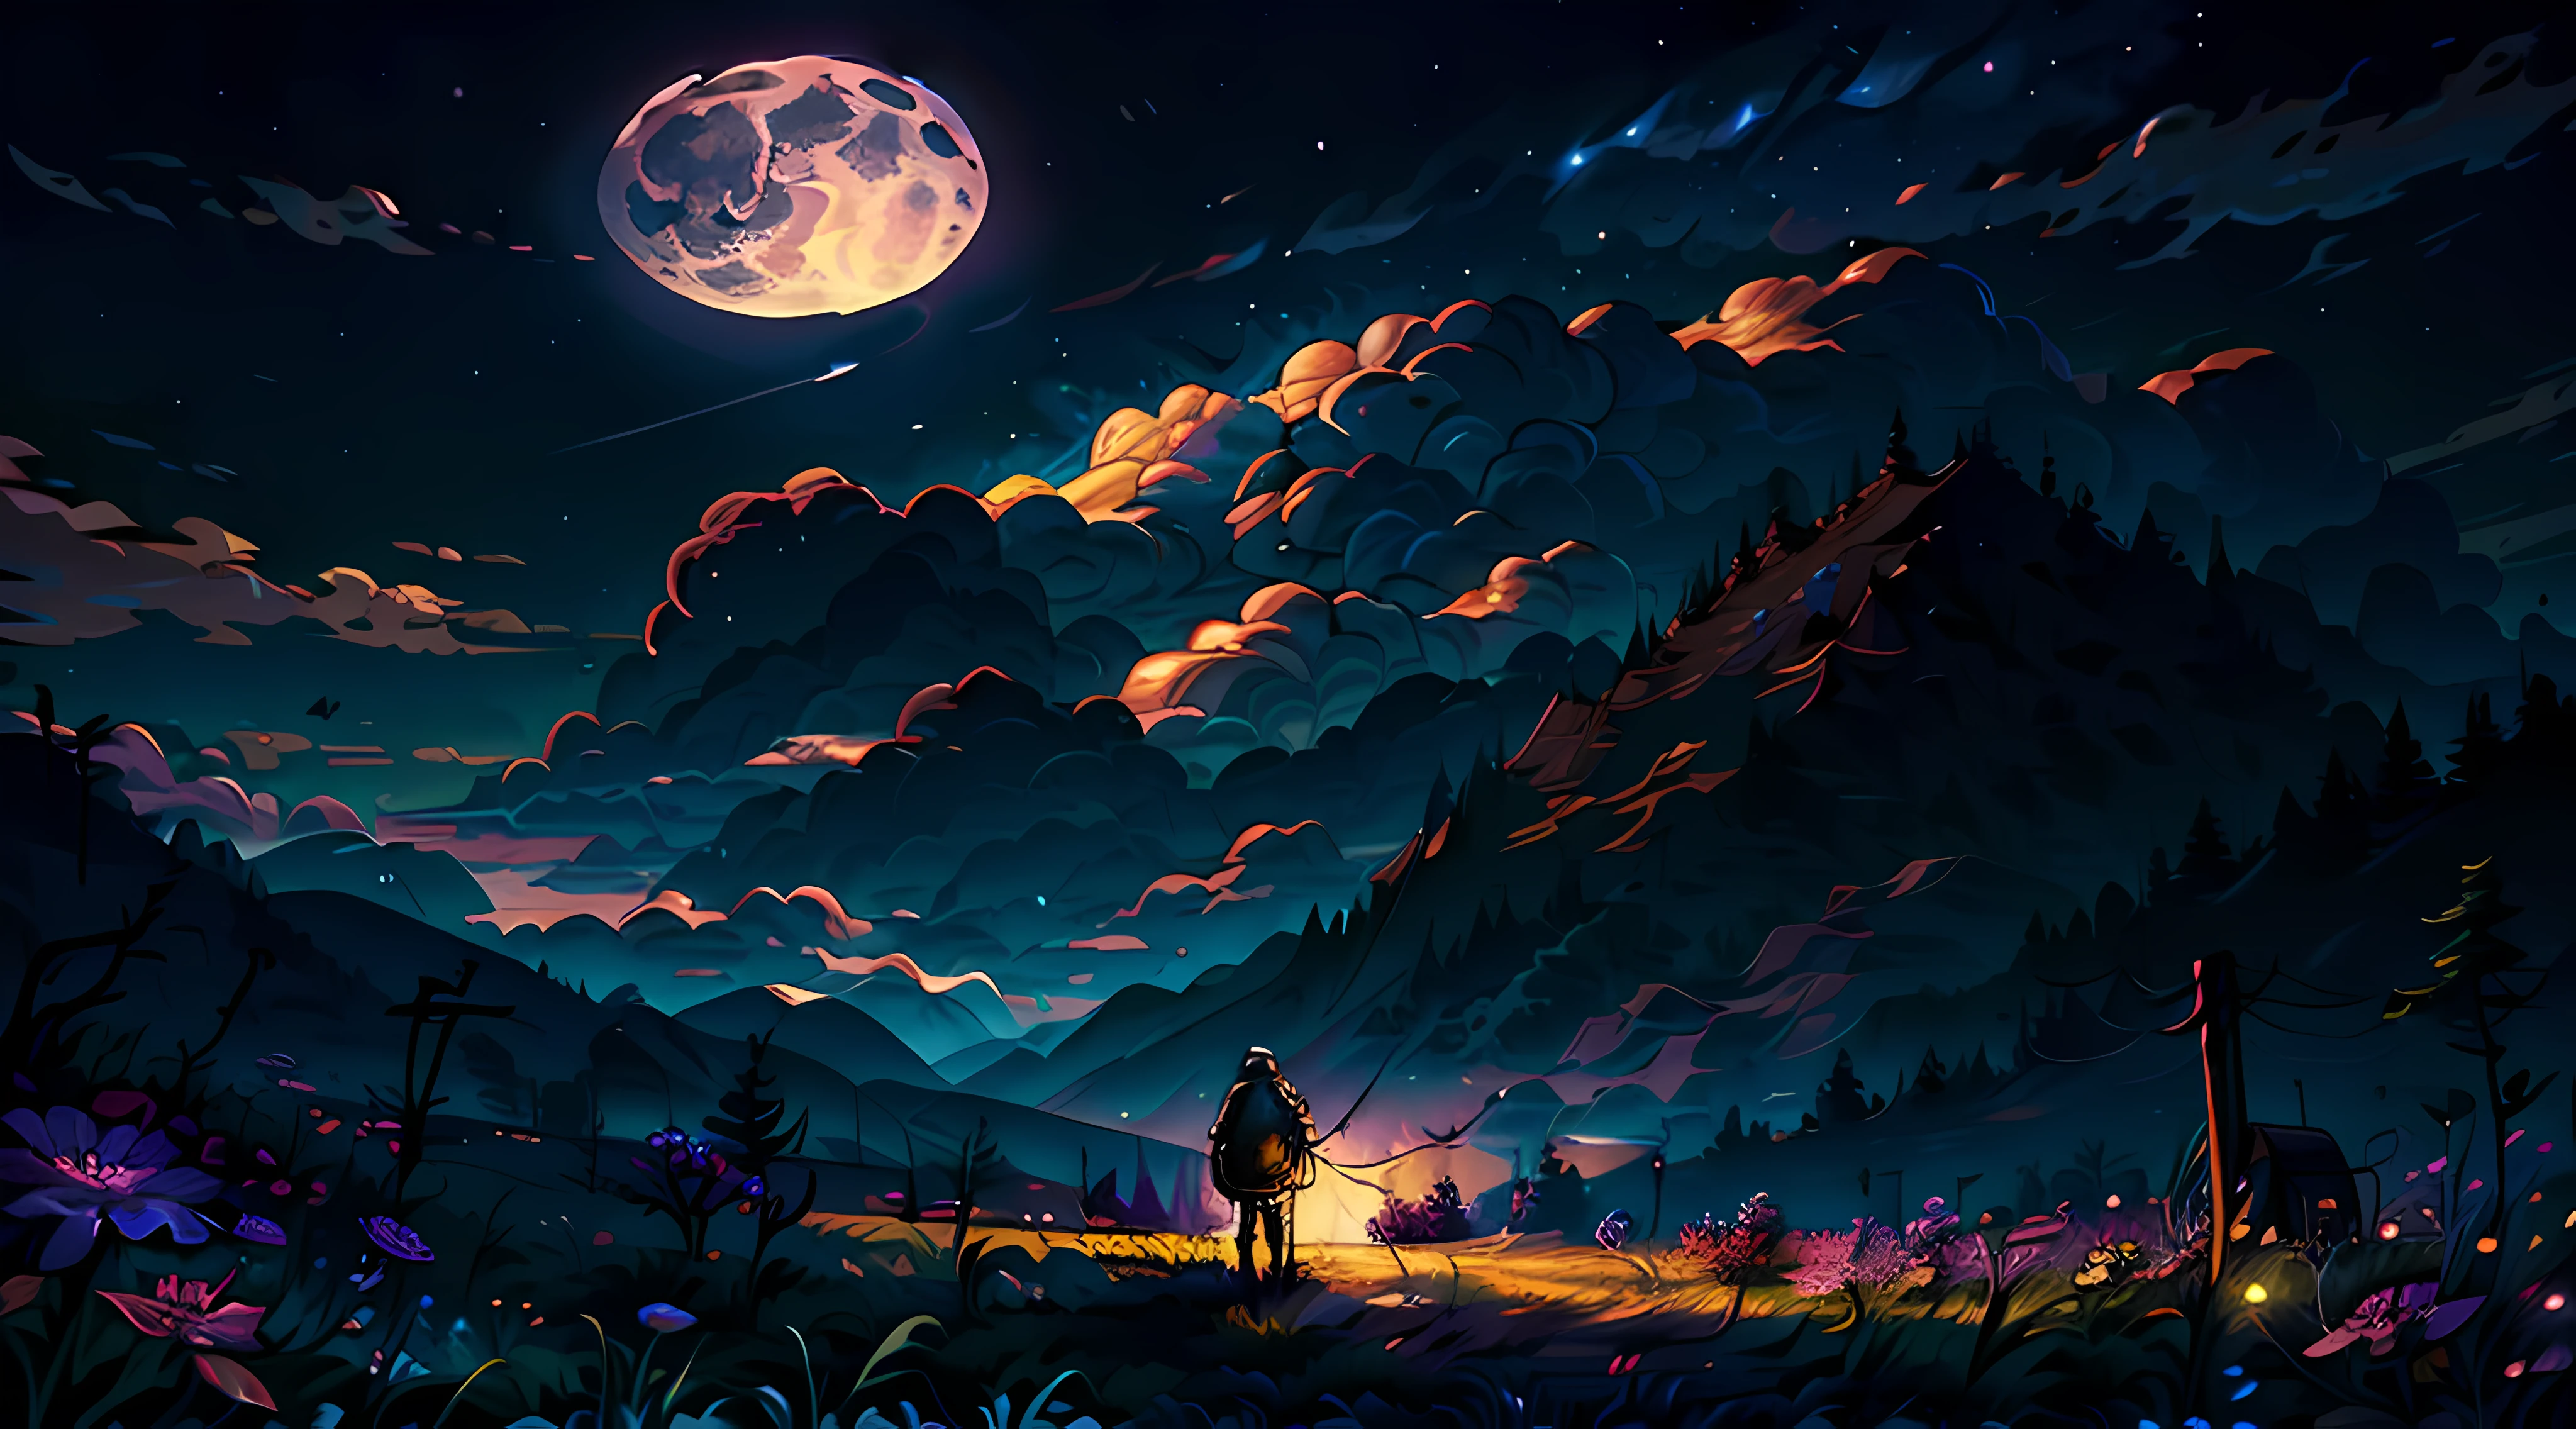 (Obra de arte:1.2, melhor qualidade), (Super detalhado), (ilustrado), (Super alto), (ilustração requintada), (Super detalhado), (ultra detalhe:1.3), light profissional lighting, iluminação cinematográfica, (nostálgico e pacífico: 1.3), profissional (pintura de paisagem) natureza, luar, luar on the meadow, 1 pessoa observando a lua, flores roxas na grama (nuvens) preto, noite escura, lua grande e cheia, Luz negra)